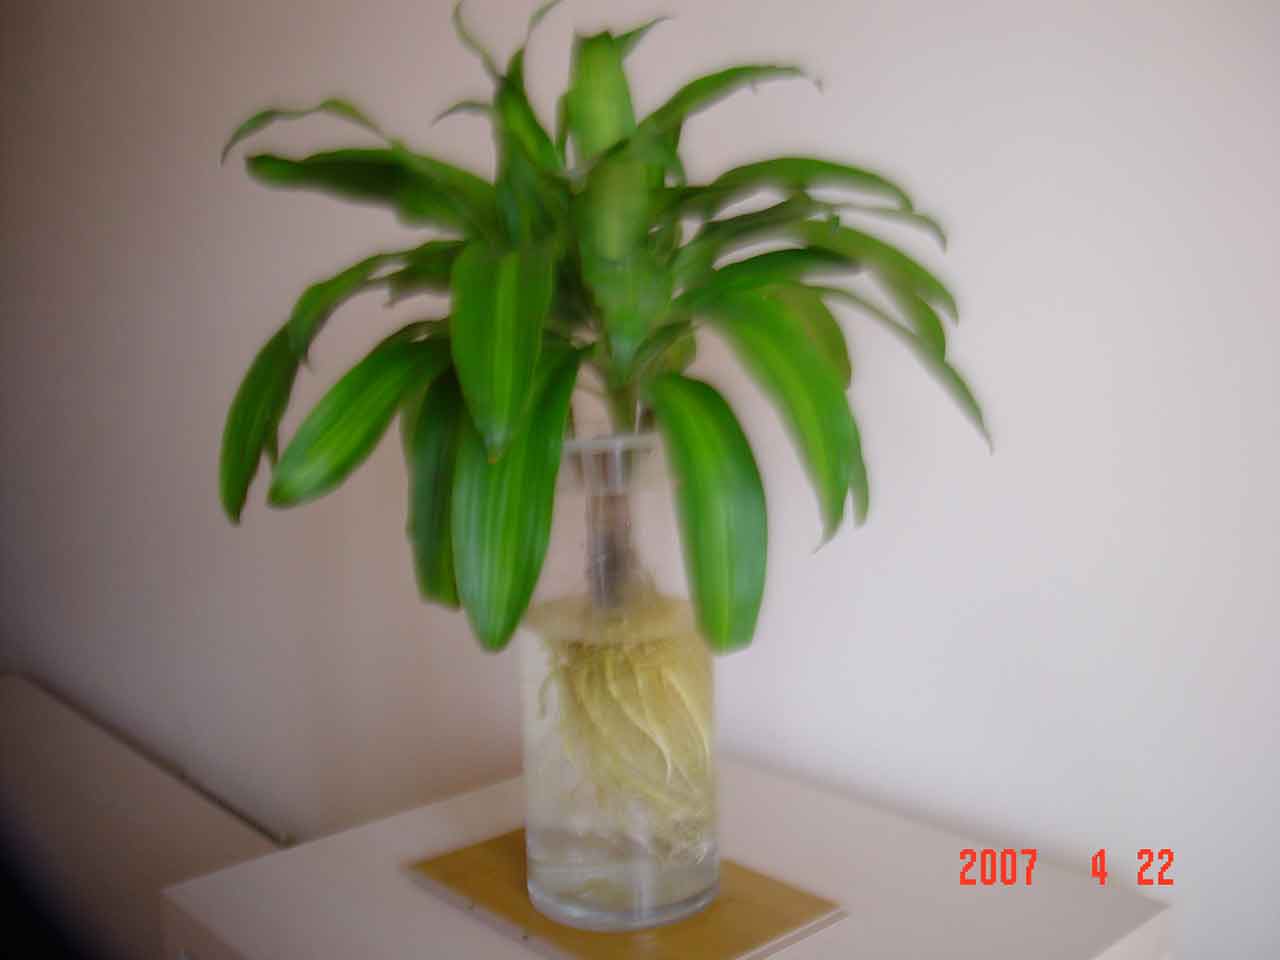 上照片:请喜欢植物的邻居们欣赏一下我家的"水培"巴西木